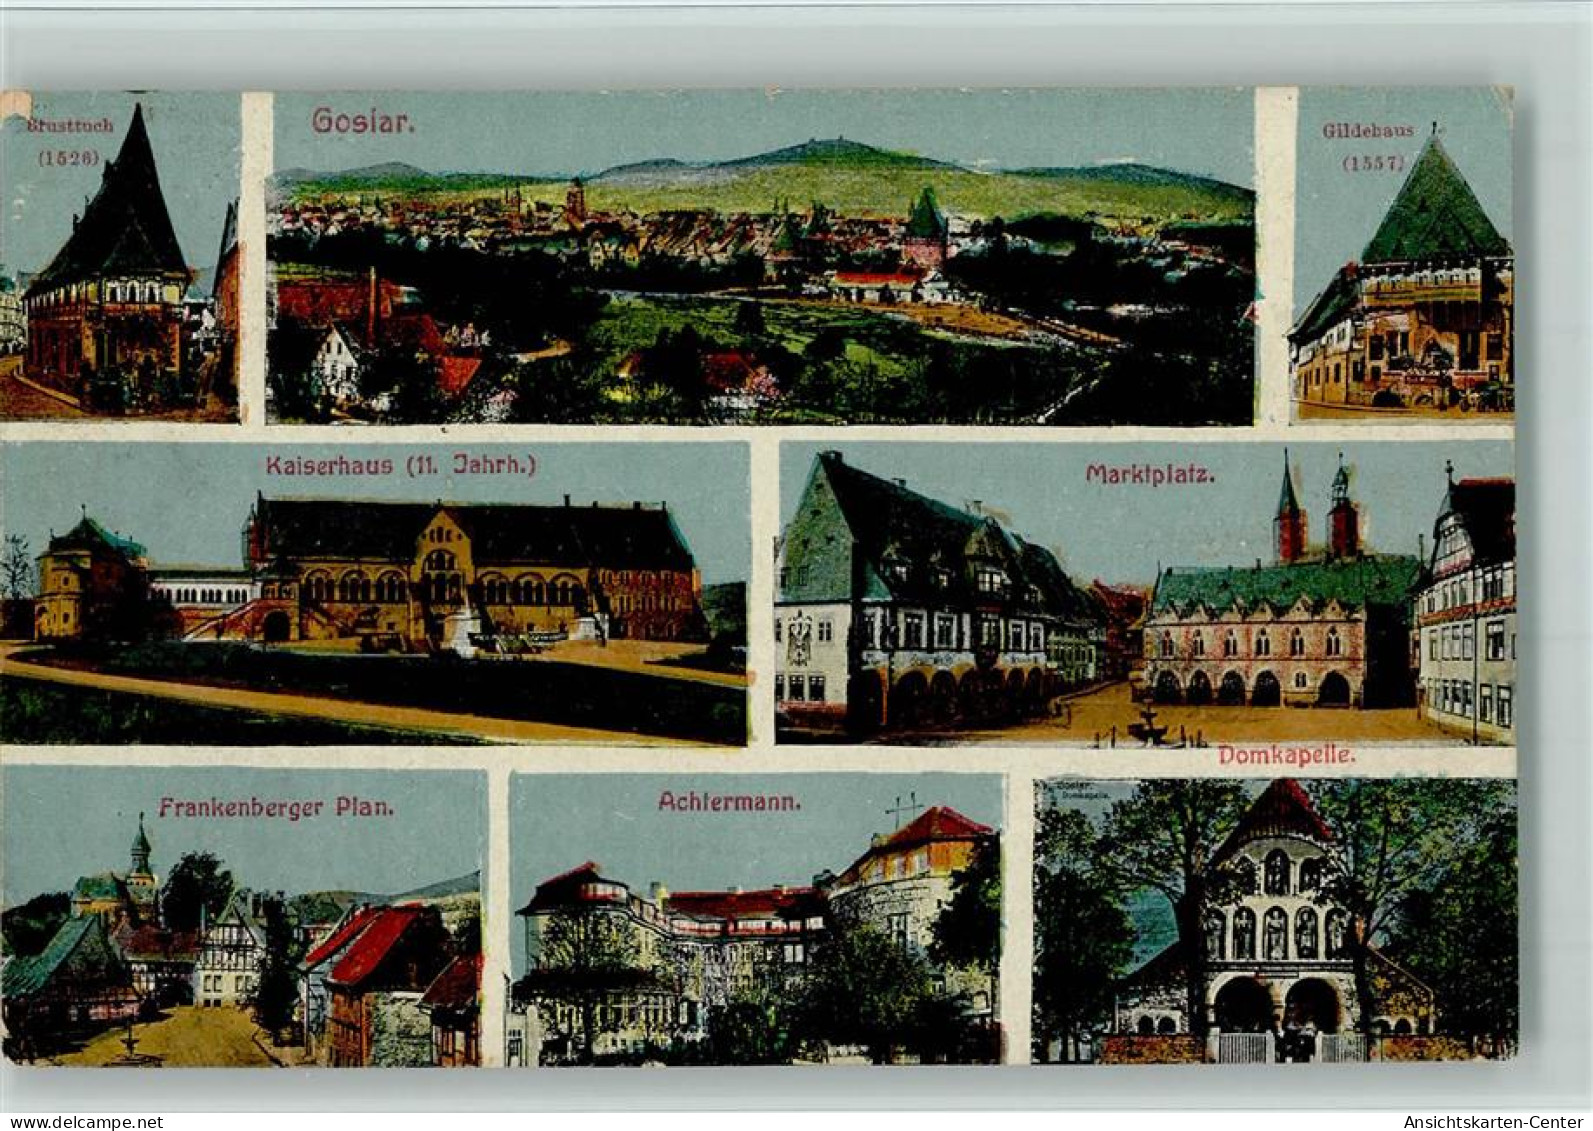 10083211 - Goslar - Goslar